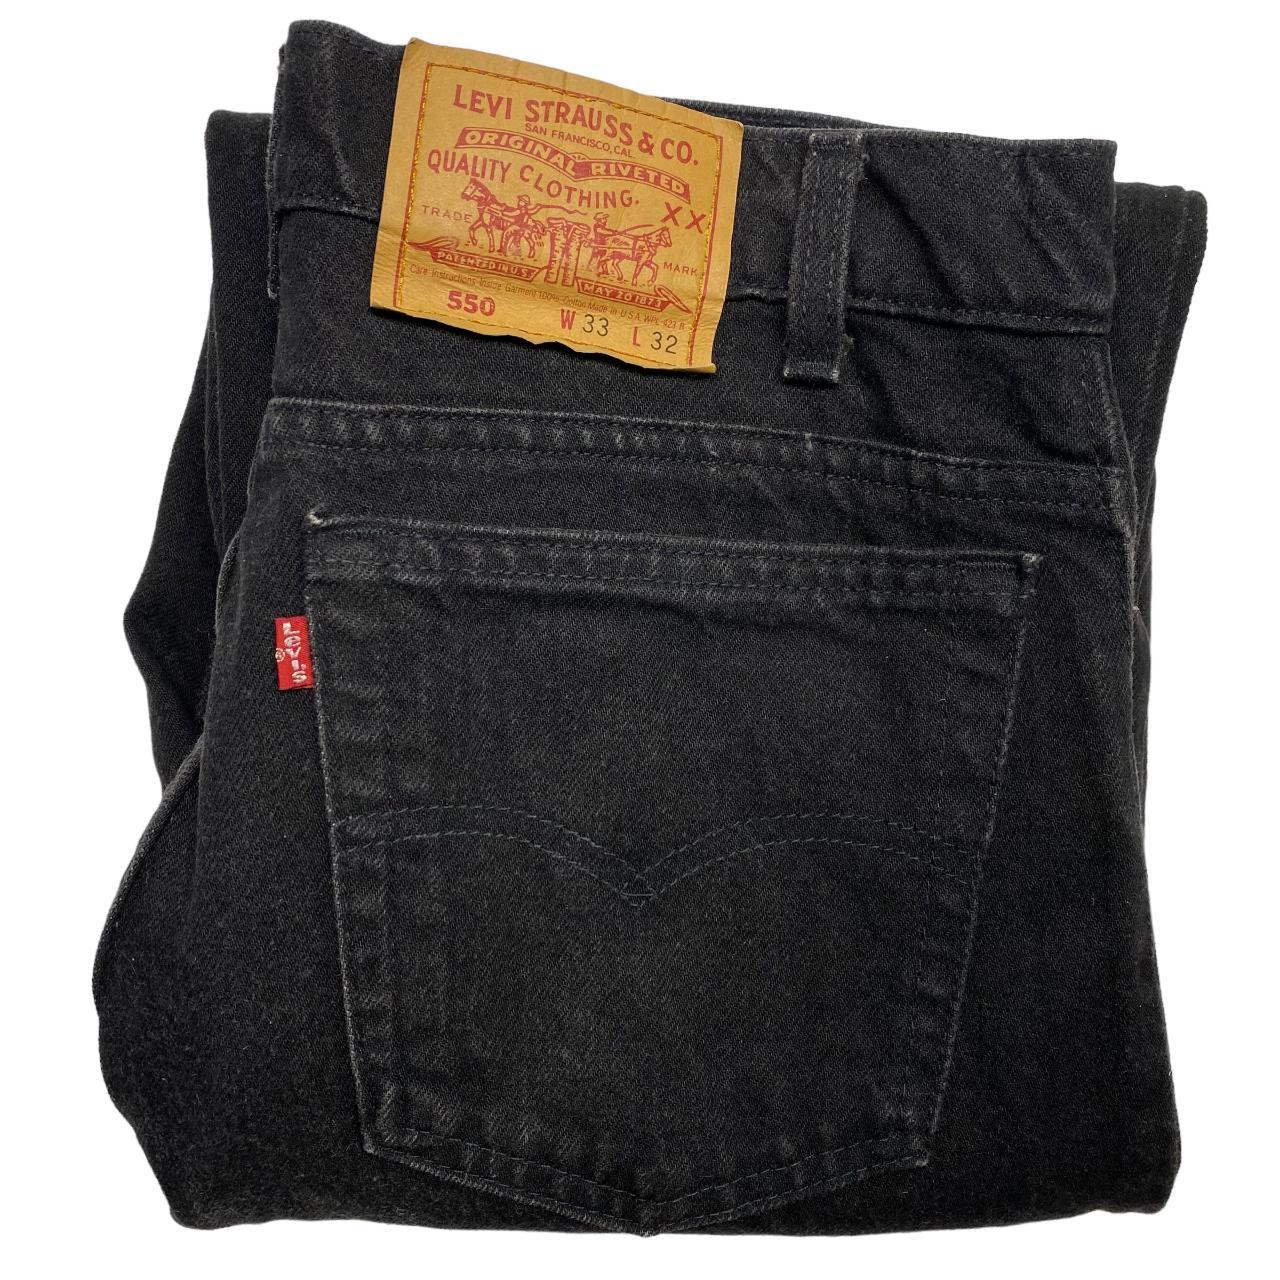 Vintage Levis 550 Jeans 80's Black USA Made Tapered... - Depop